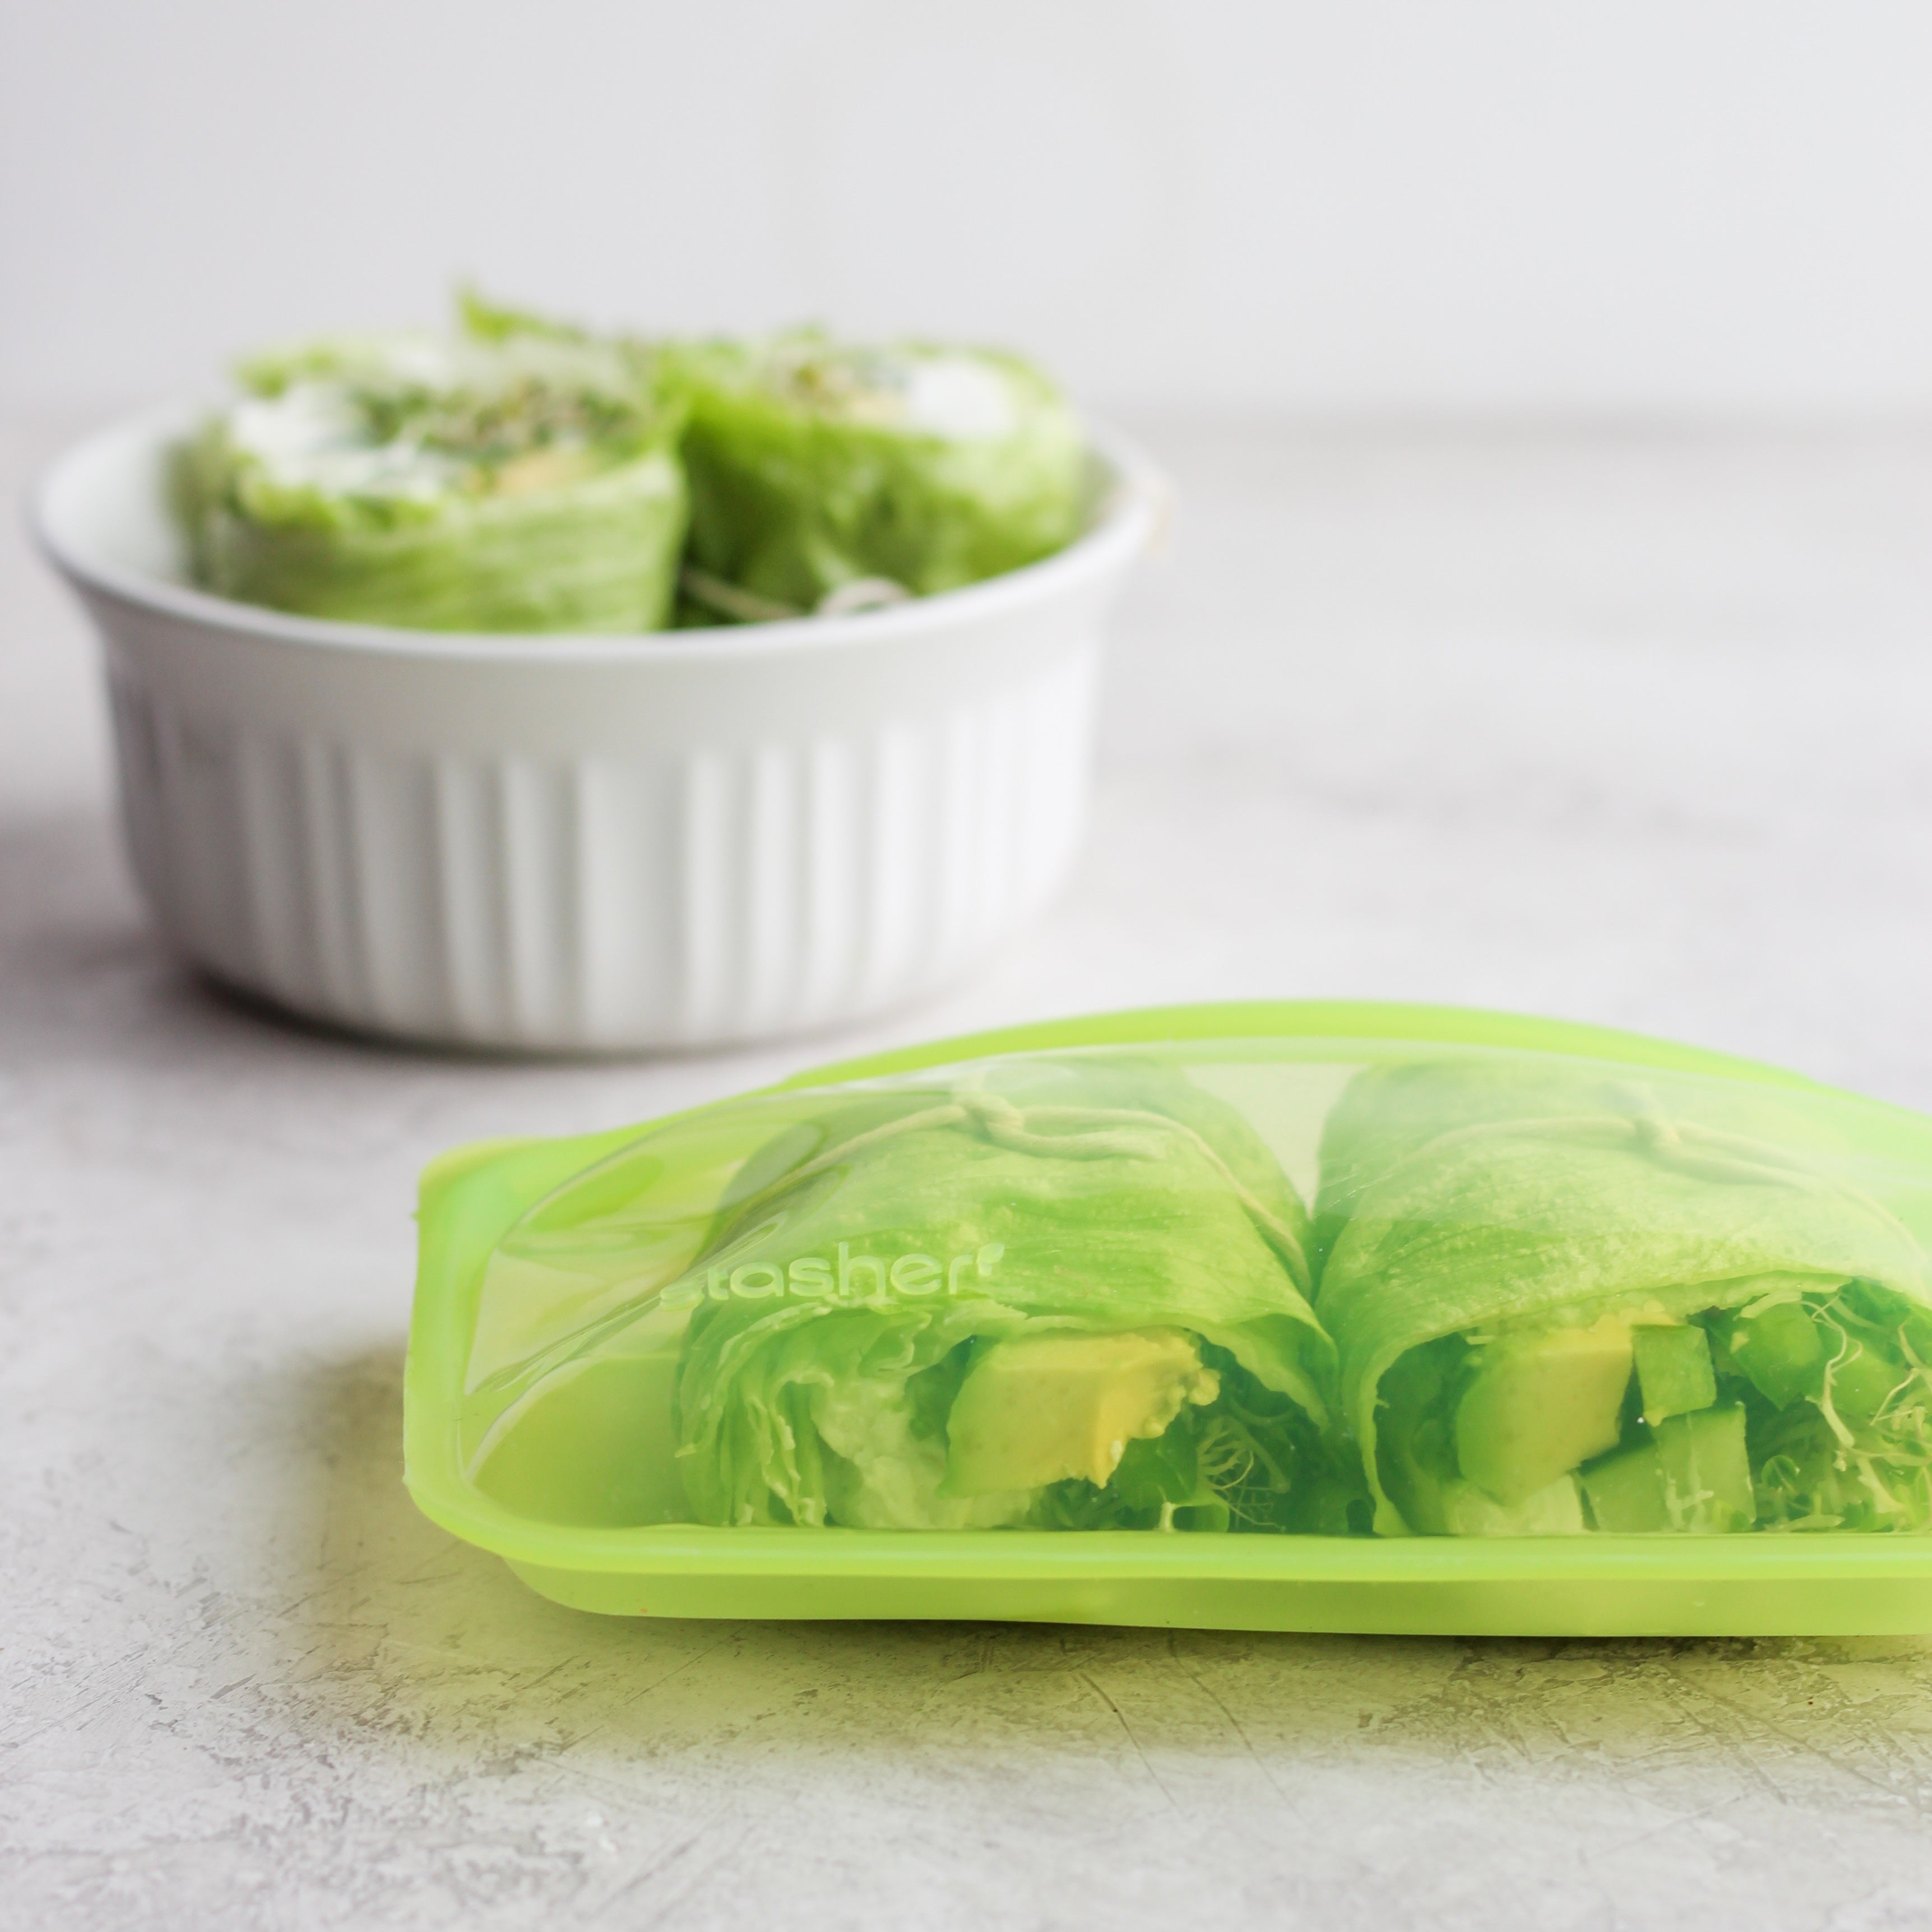 green veggie lettuce wraps to go - stasher bag